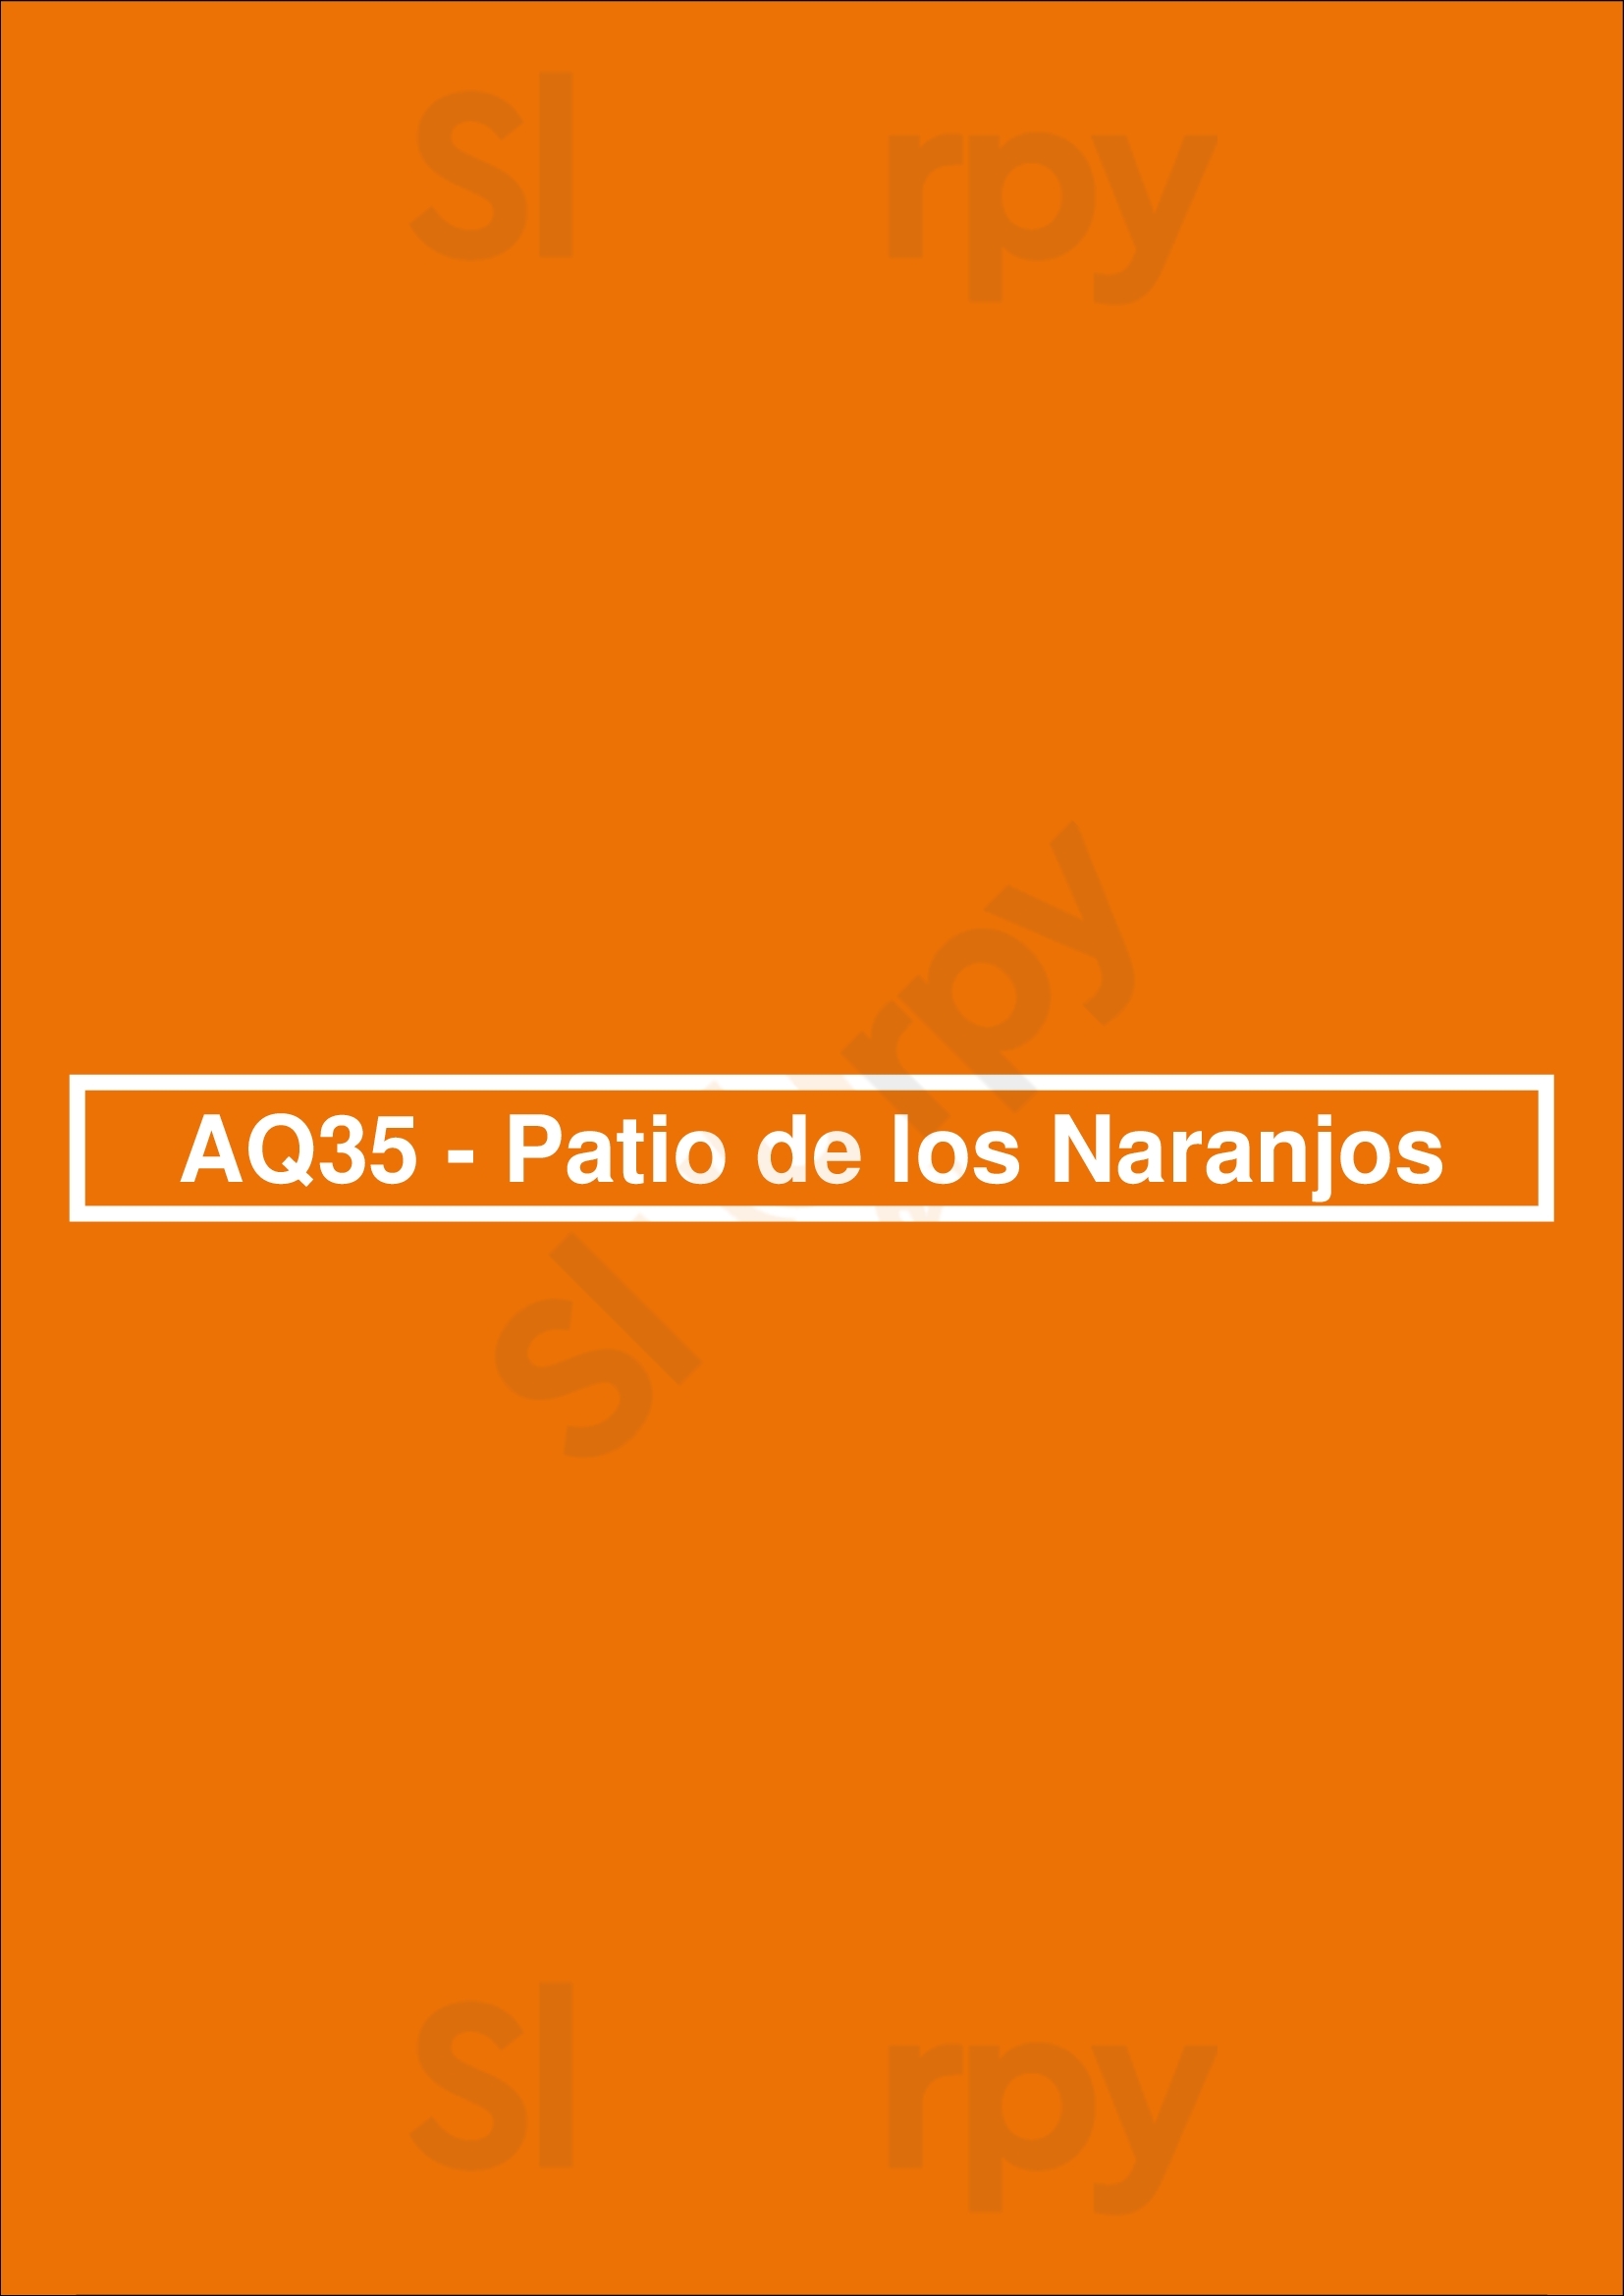 Aq35 - Patio De Los Naranjos Jerez de la Frontera Menu - 1